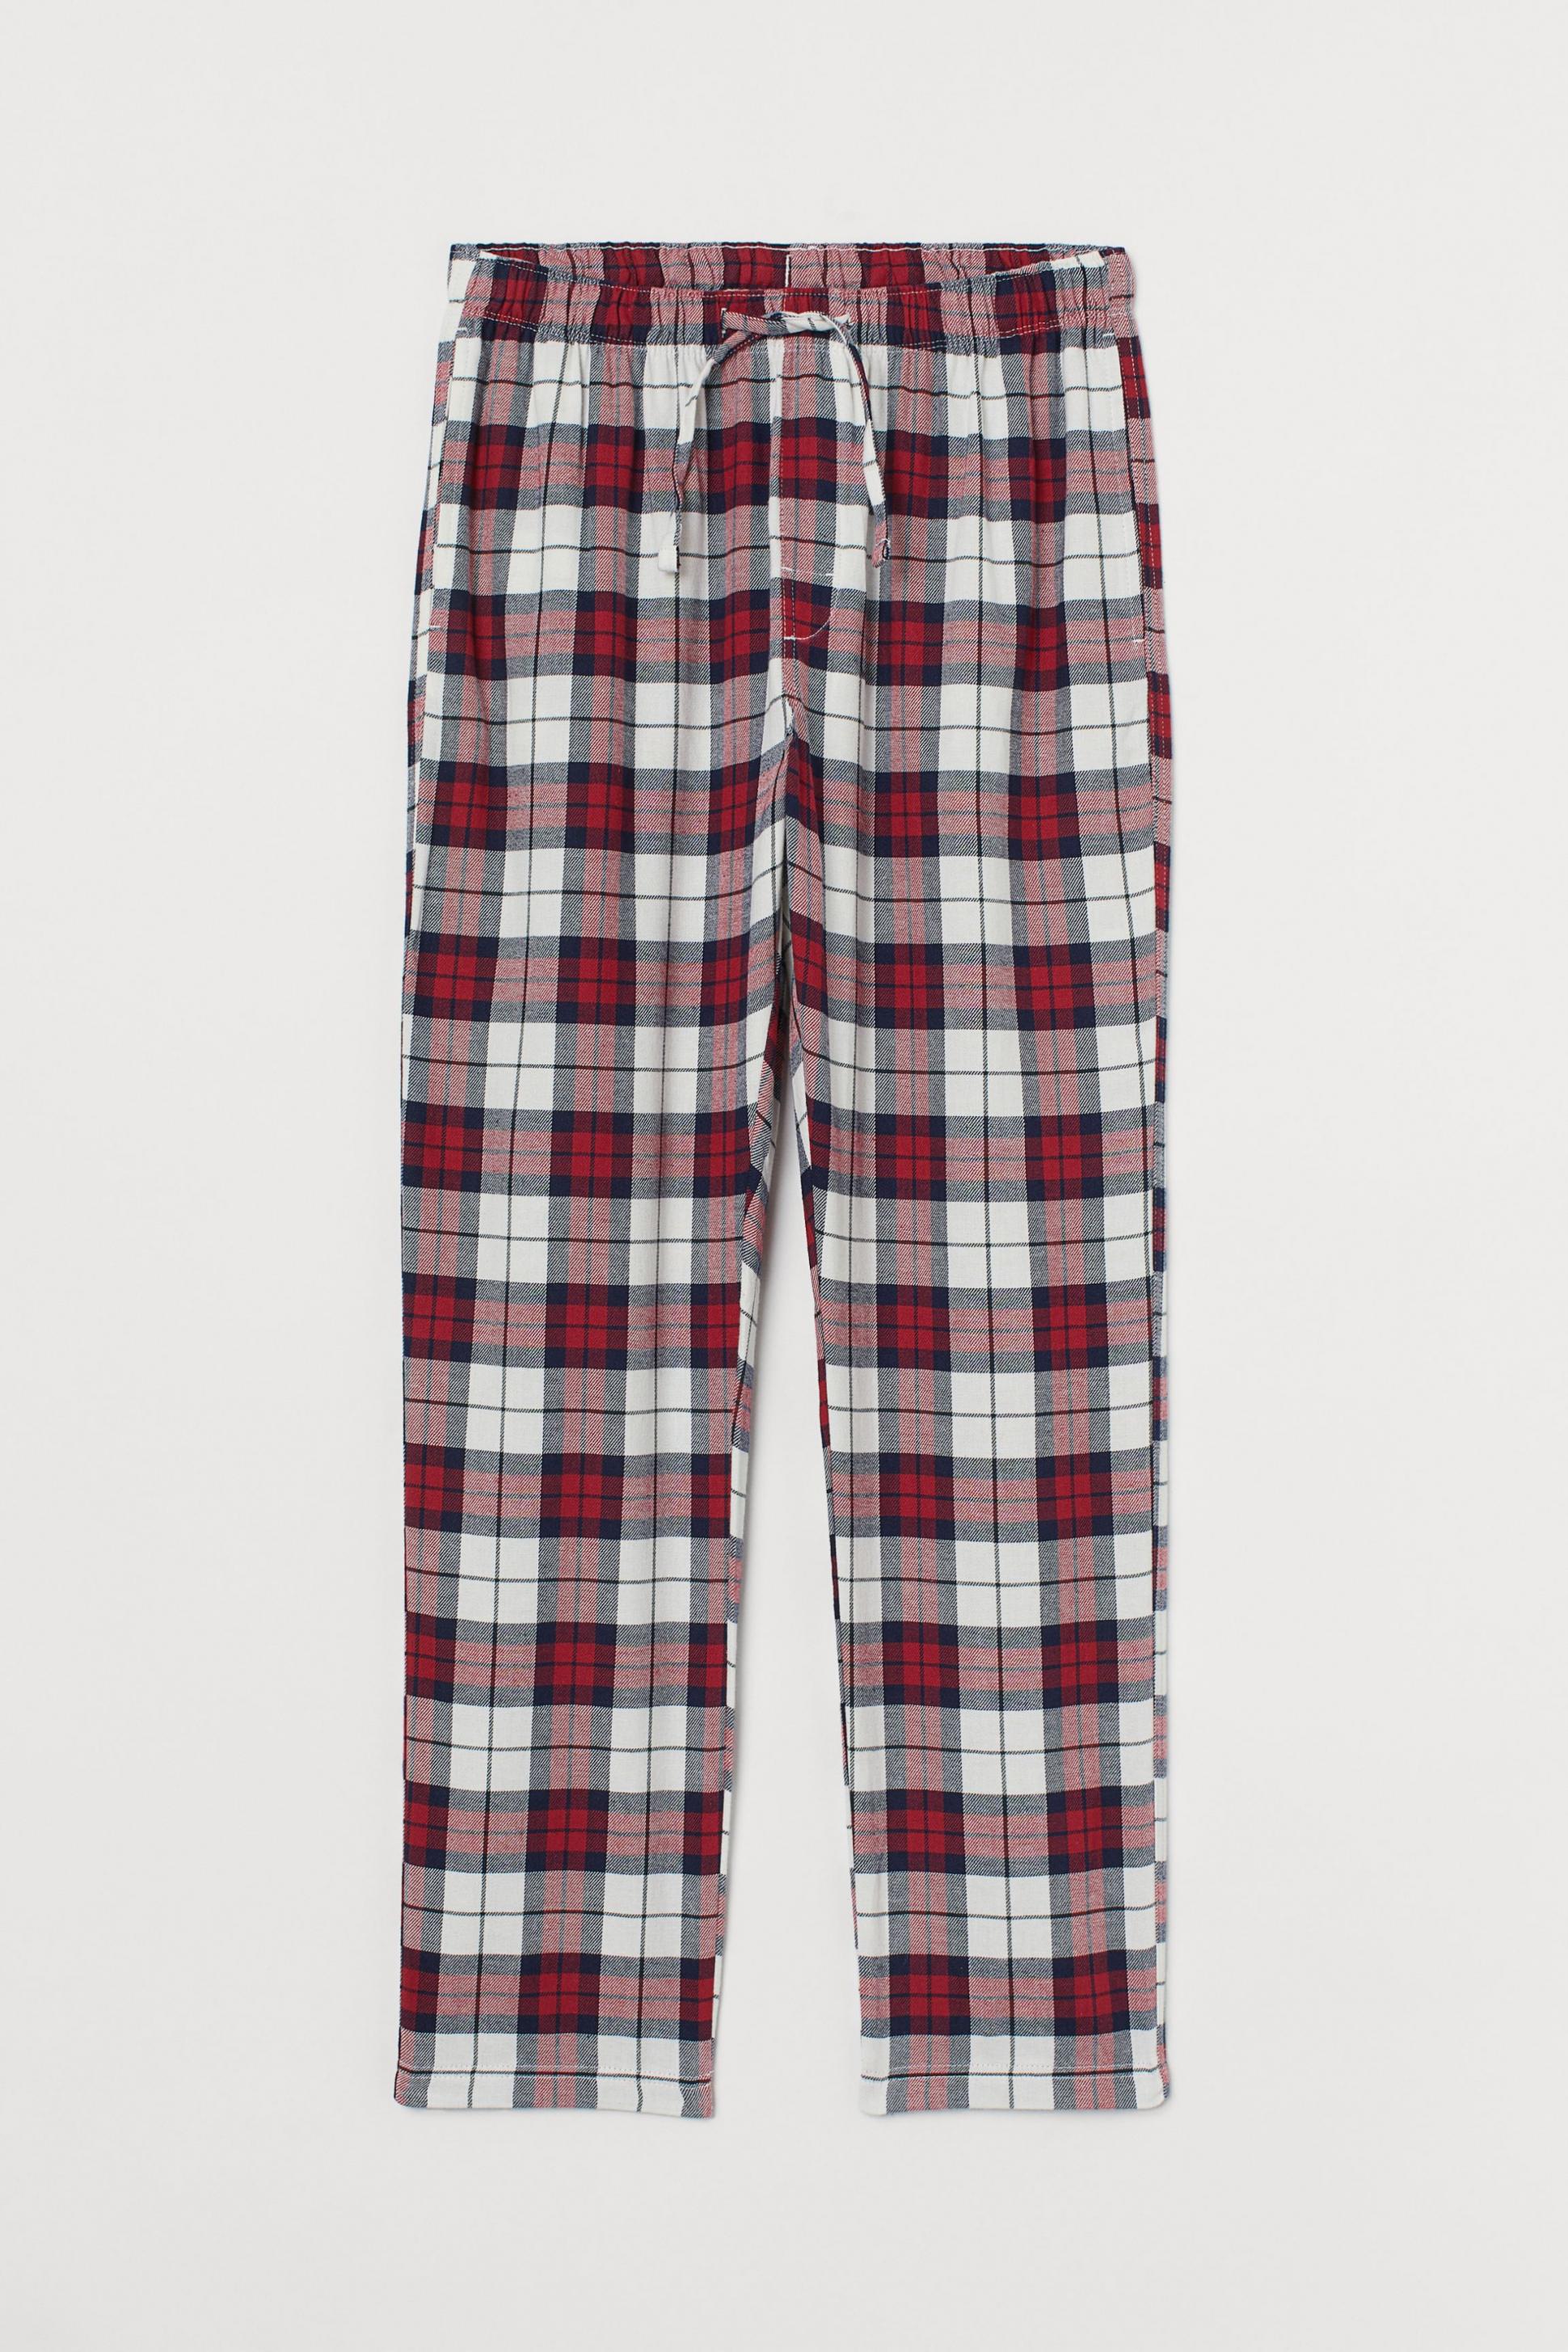 SIORO Bas de Pyjama en Flanelle pour Homme Pantalon de détente en Coton Doux à Carreaux 